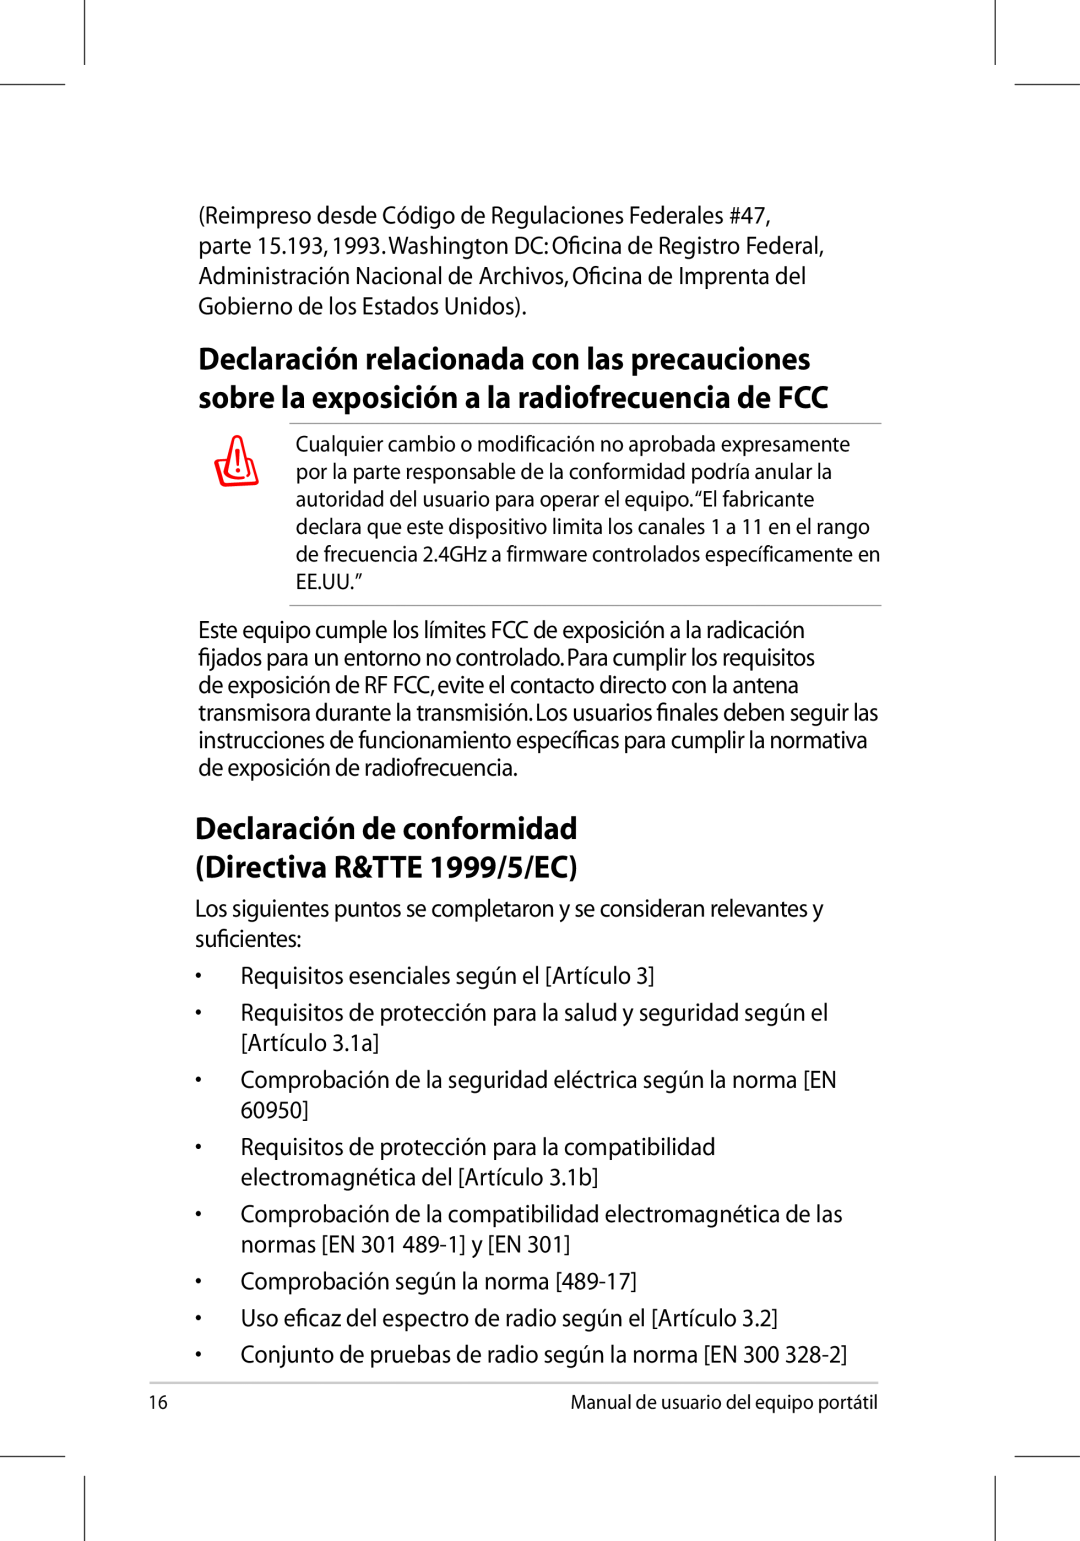 Asus UL50/PRO5G/X5G manual Declaración de conformidad Directiva R&TTE 1999/5/EC, Requisitos esenciales según el Artículo 